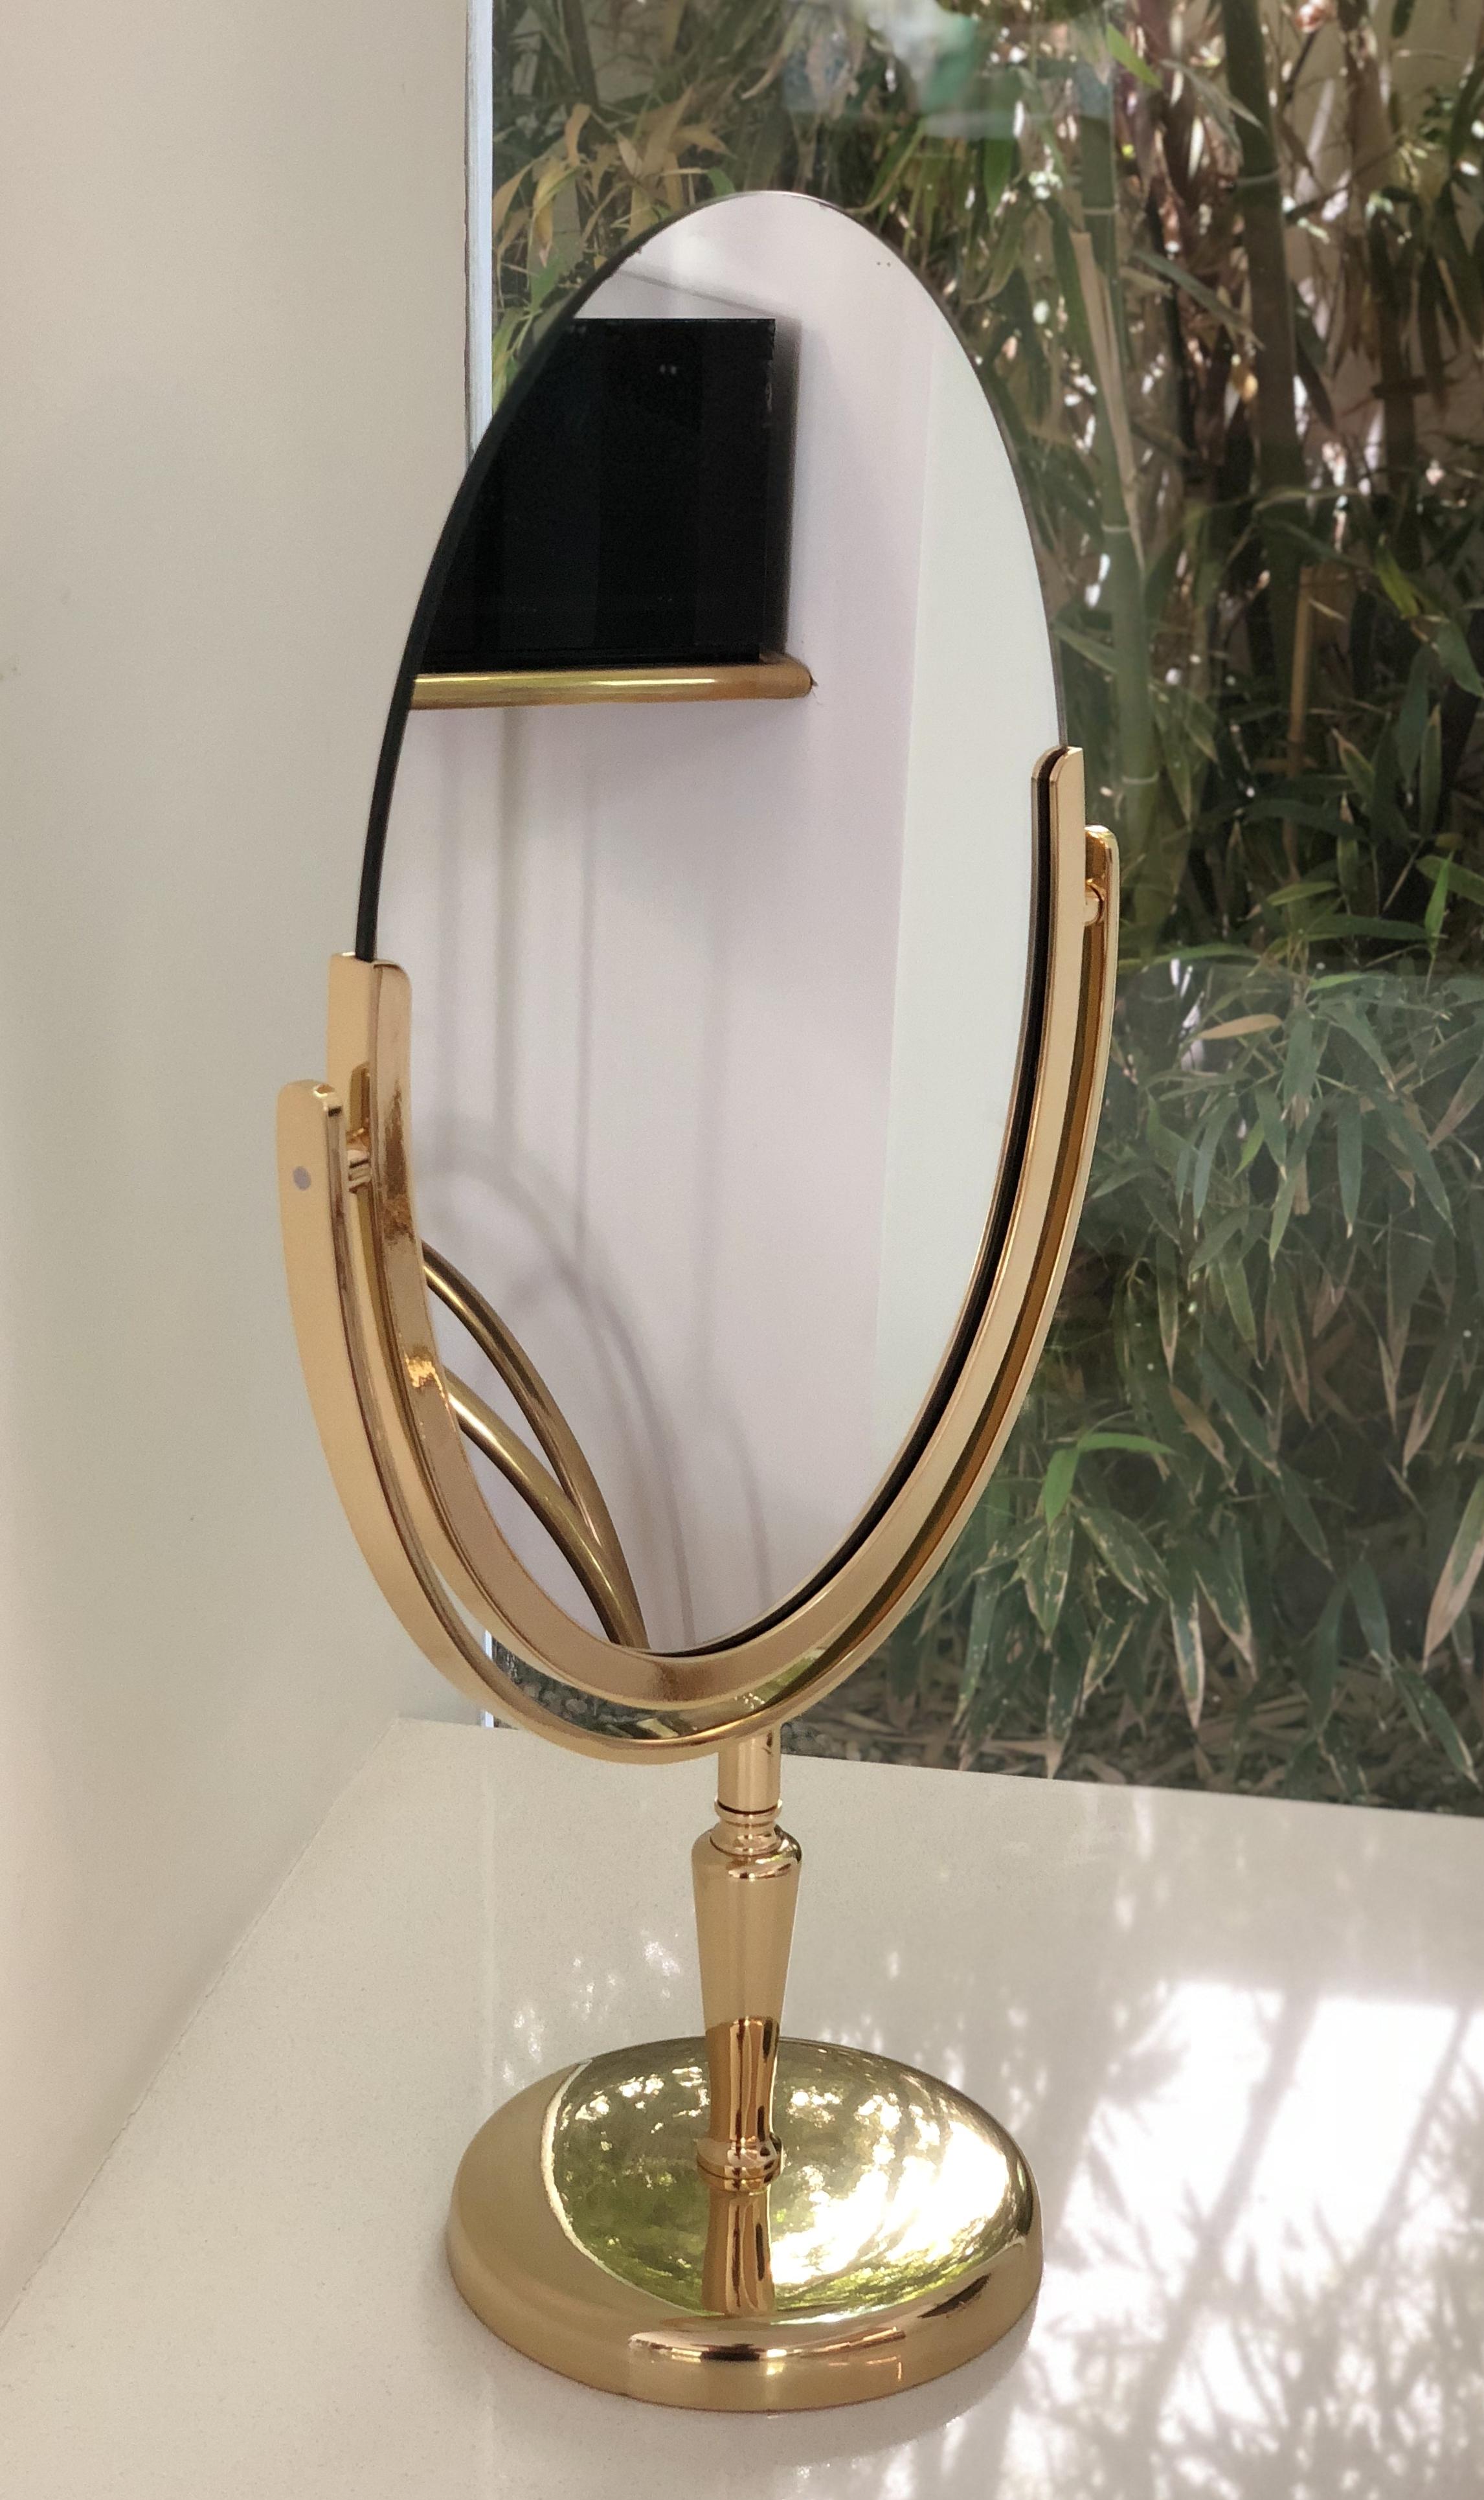 Großer und schöner ovaler Spiegel, entworfen und hergestellt von Charles Hollis Jones in den 1960er Jahren.
Der Spiegel hat eine schöne handpolierte Patina, der Spiegel ist doppelseitig und kann umgedreht werden, um auf beiden Seiten verwendet zu